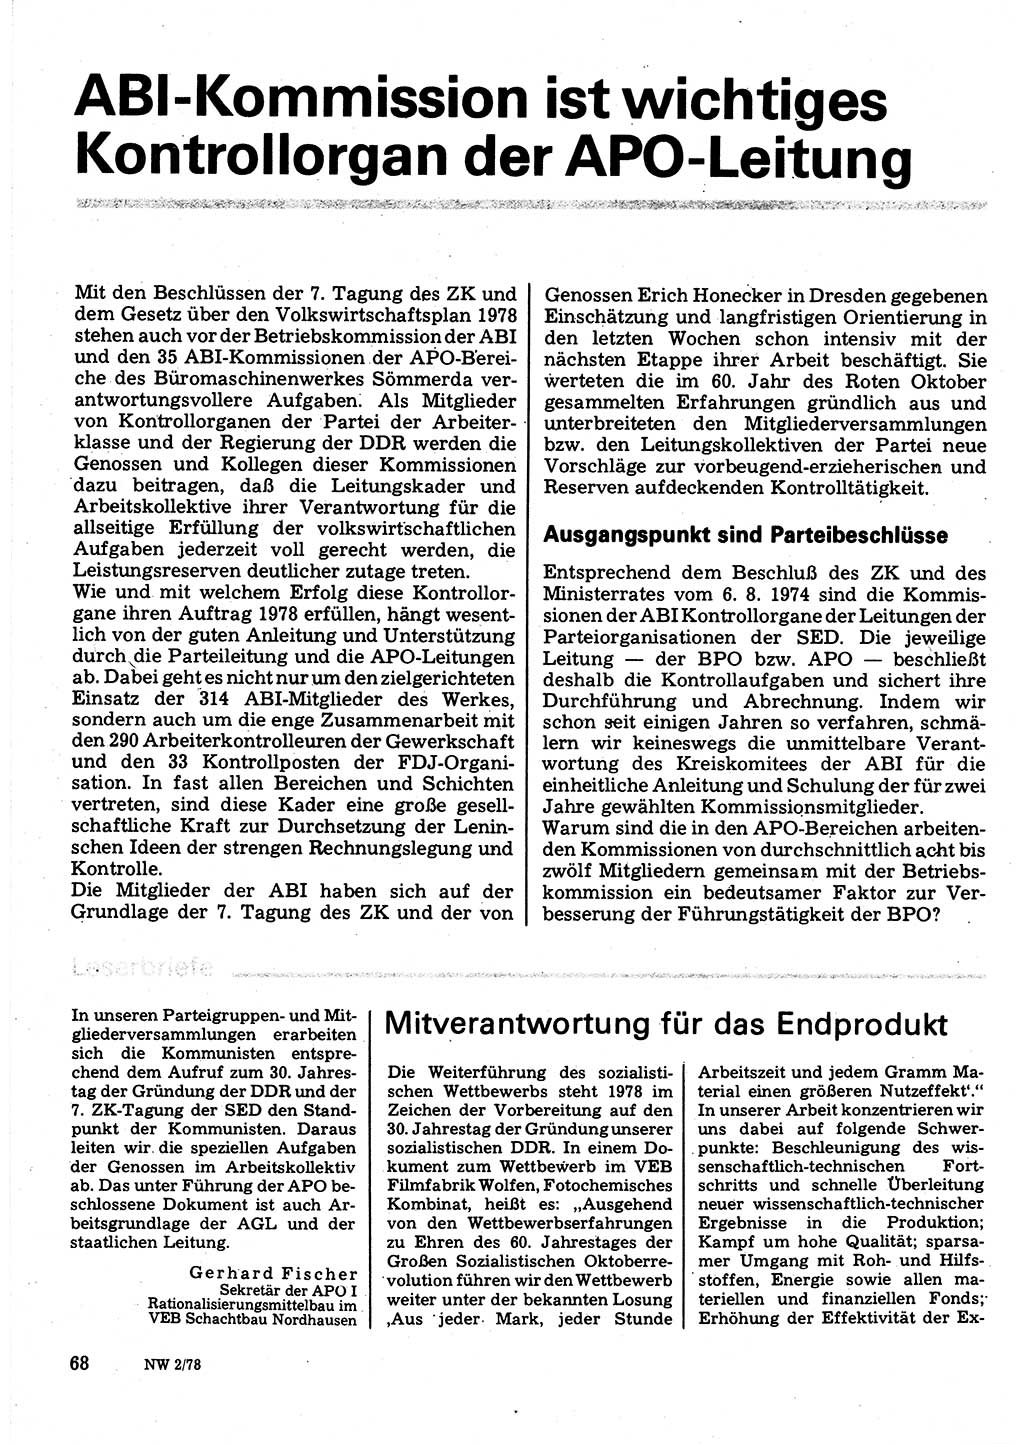 Neuer Weg (NW), Organ des Zentralkomitees (ZK) der SED (Sozialistische Einheitspartei Deutschlands) für Fragen des Parteilebens, 33. Jahrgang [Deutsche Demokratische Republik (DDR)] 1978, Seite 68 (NW ZK SED DDR 1978, S. 68)